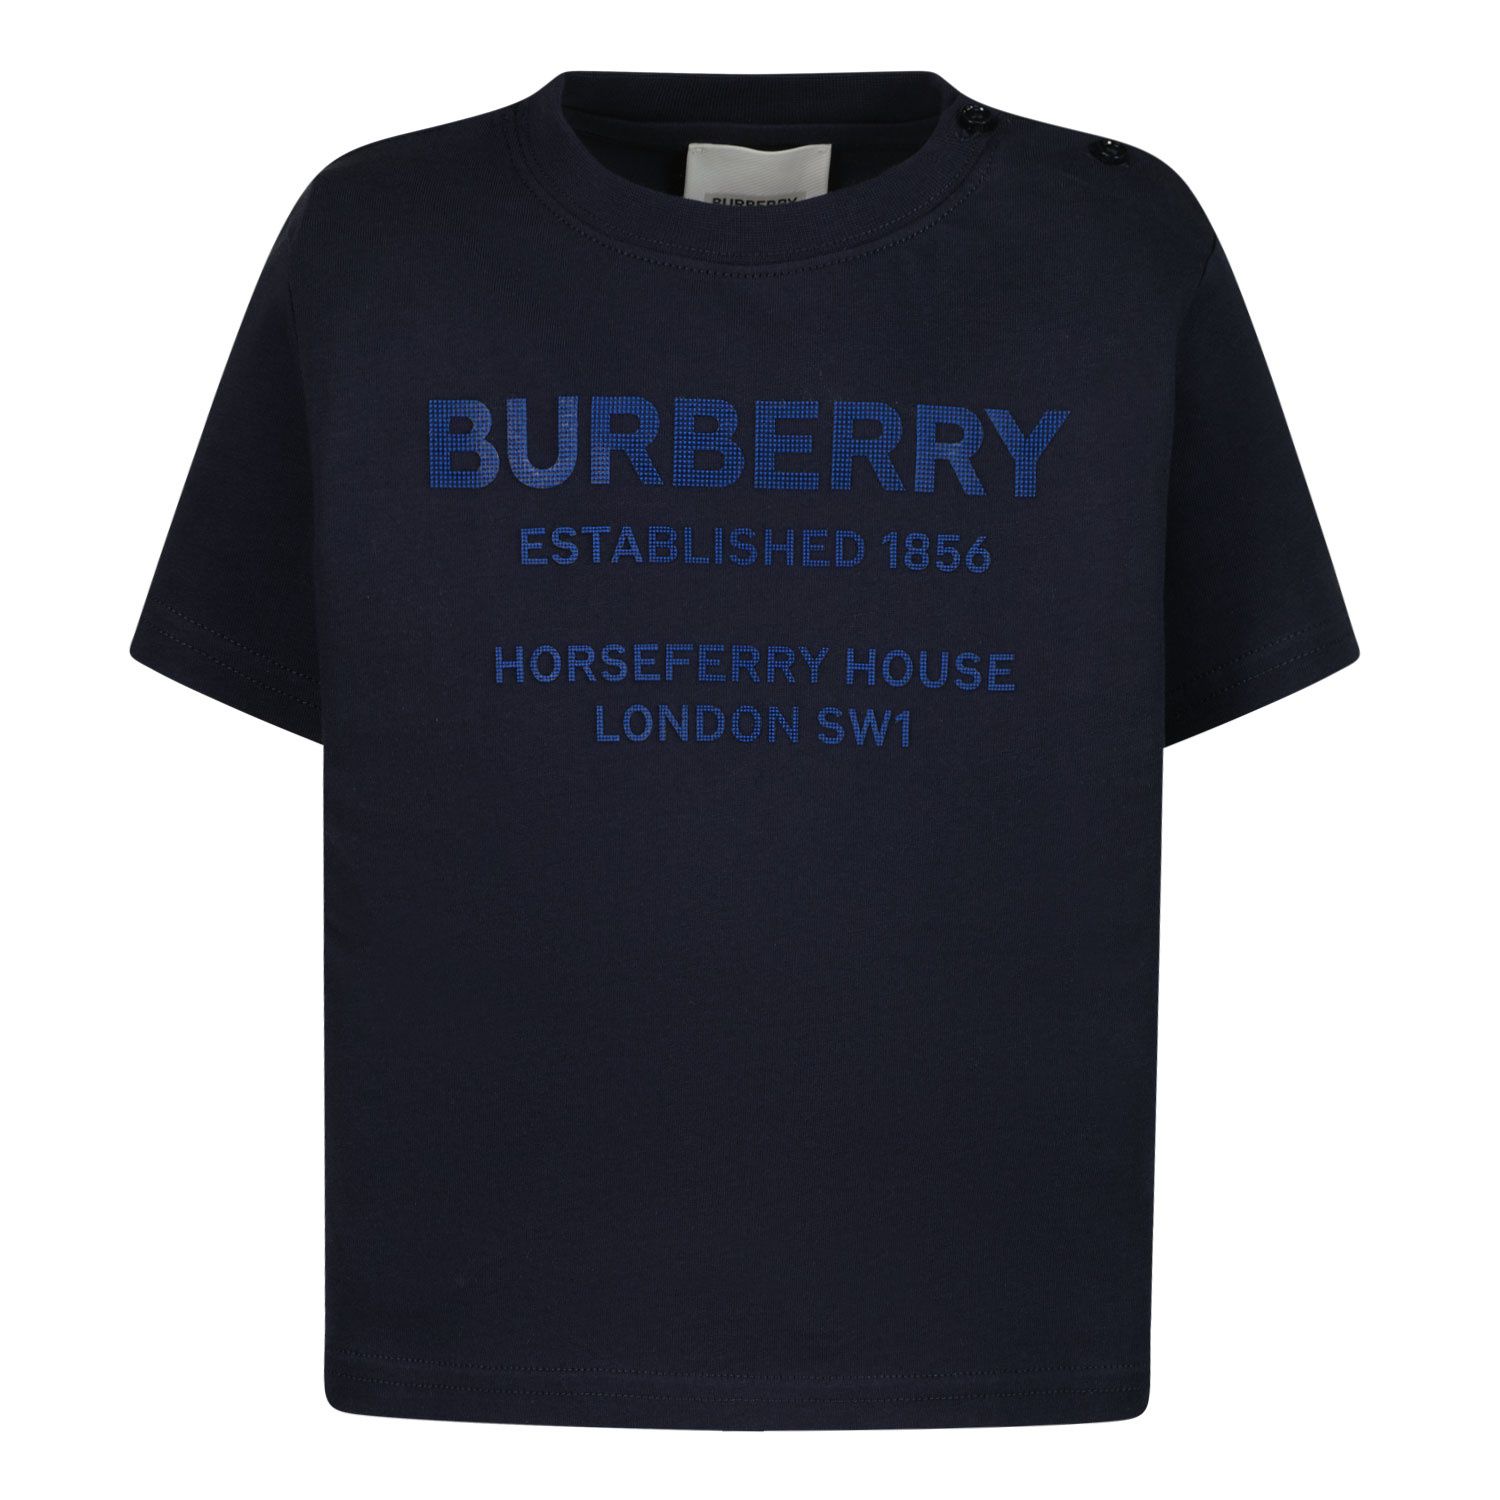 Afbeelding van Burberry 8054048 baby t-shirt donker blauw